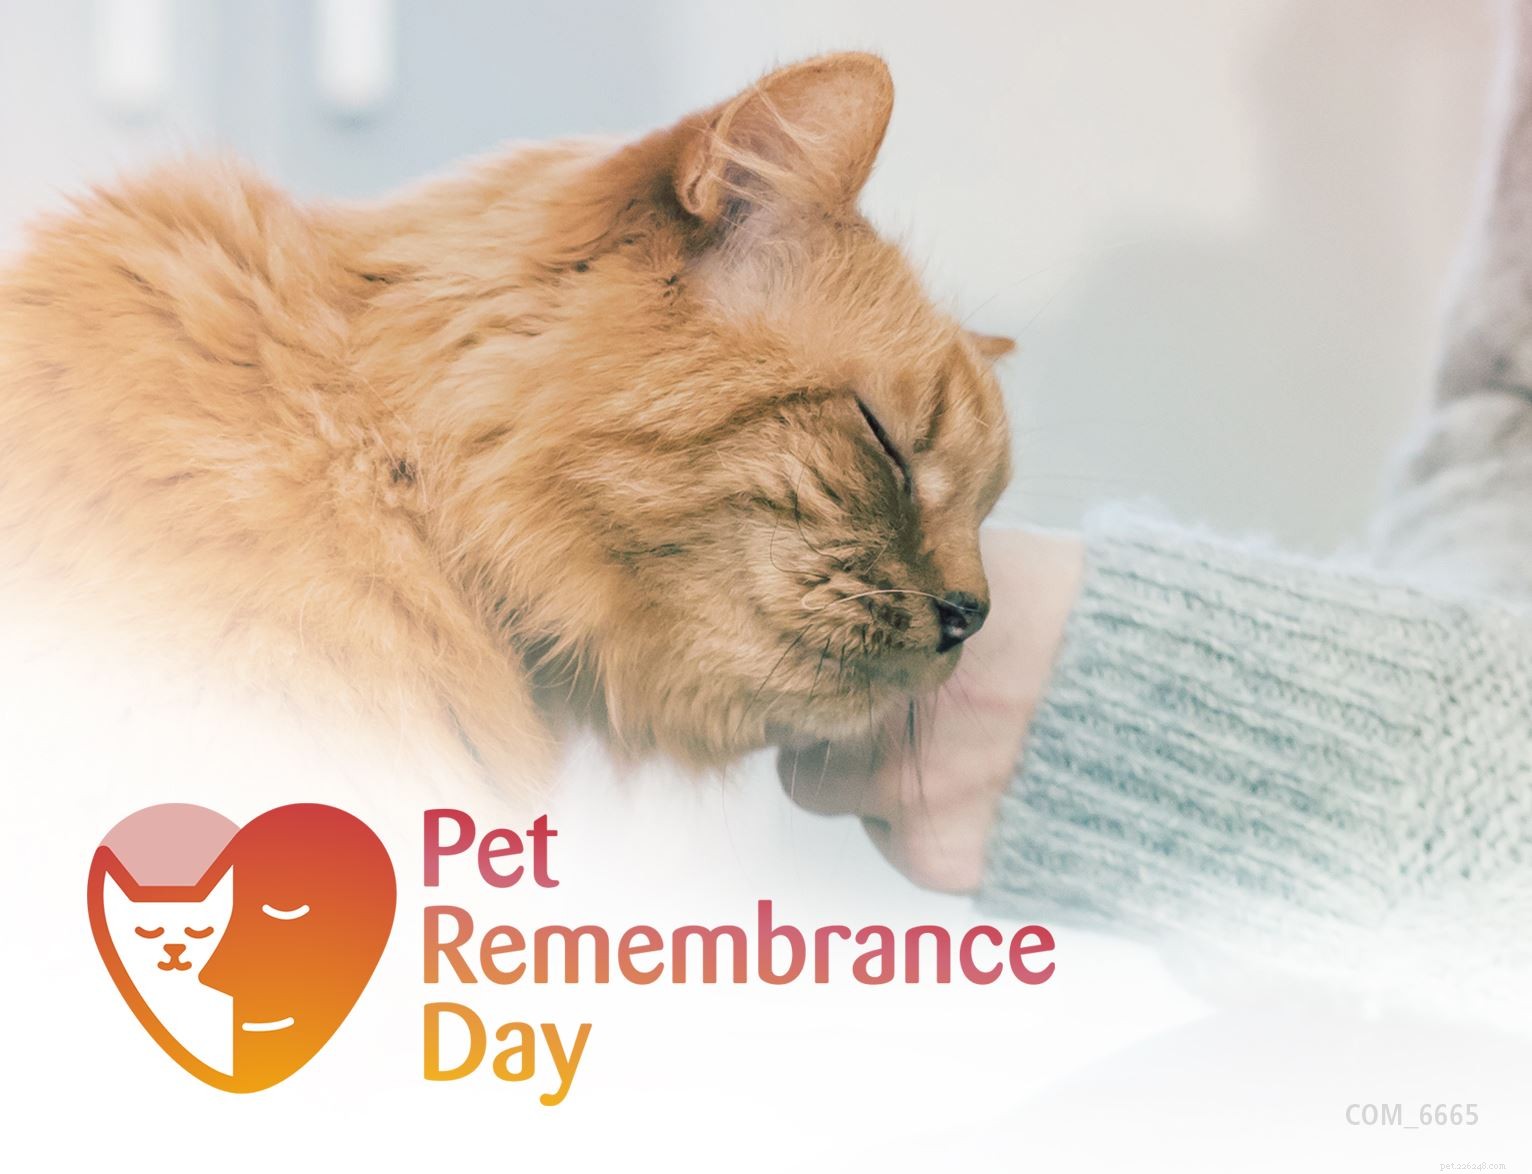 Découvrez des idées commémoratives spéciales pour honorer la mémoire de votre chat bien-aimé en ce jour du souvenir des animaux domestiques